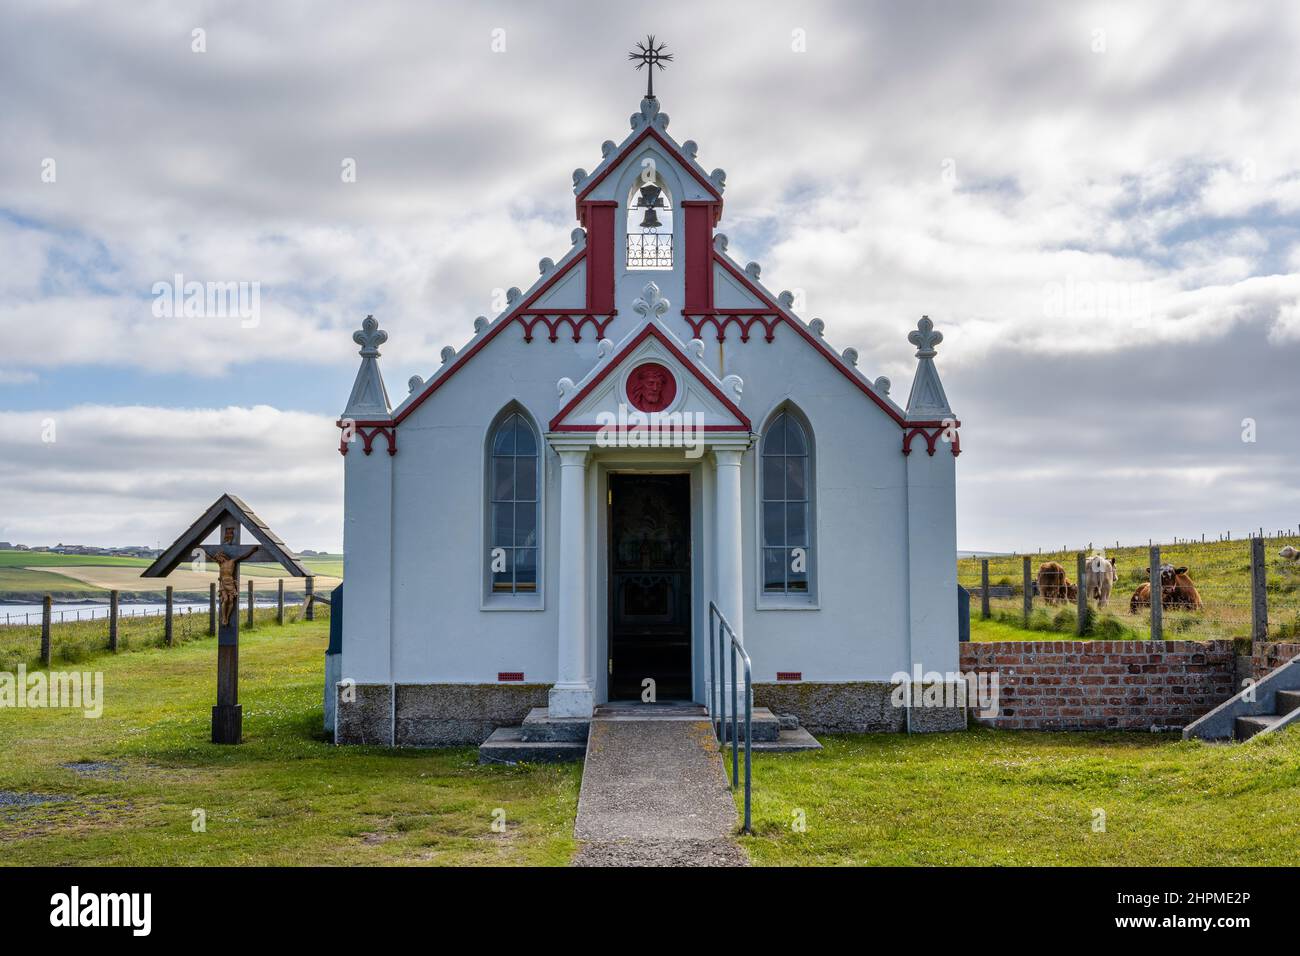 Außenansicht der italienischen Kapelle, die WW2 von italienischen Kriegsgefangenen auf der kleinen Insel Lamb Holm, Orkney Isles, Schottland, Großbritannien, erbaut wurde Stockfoto